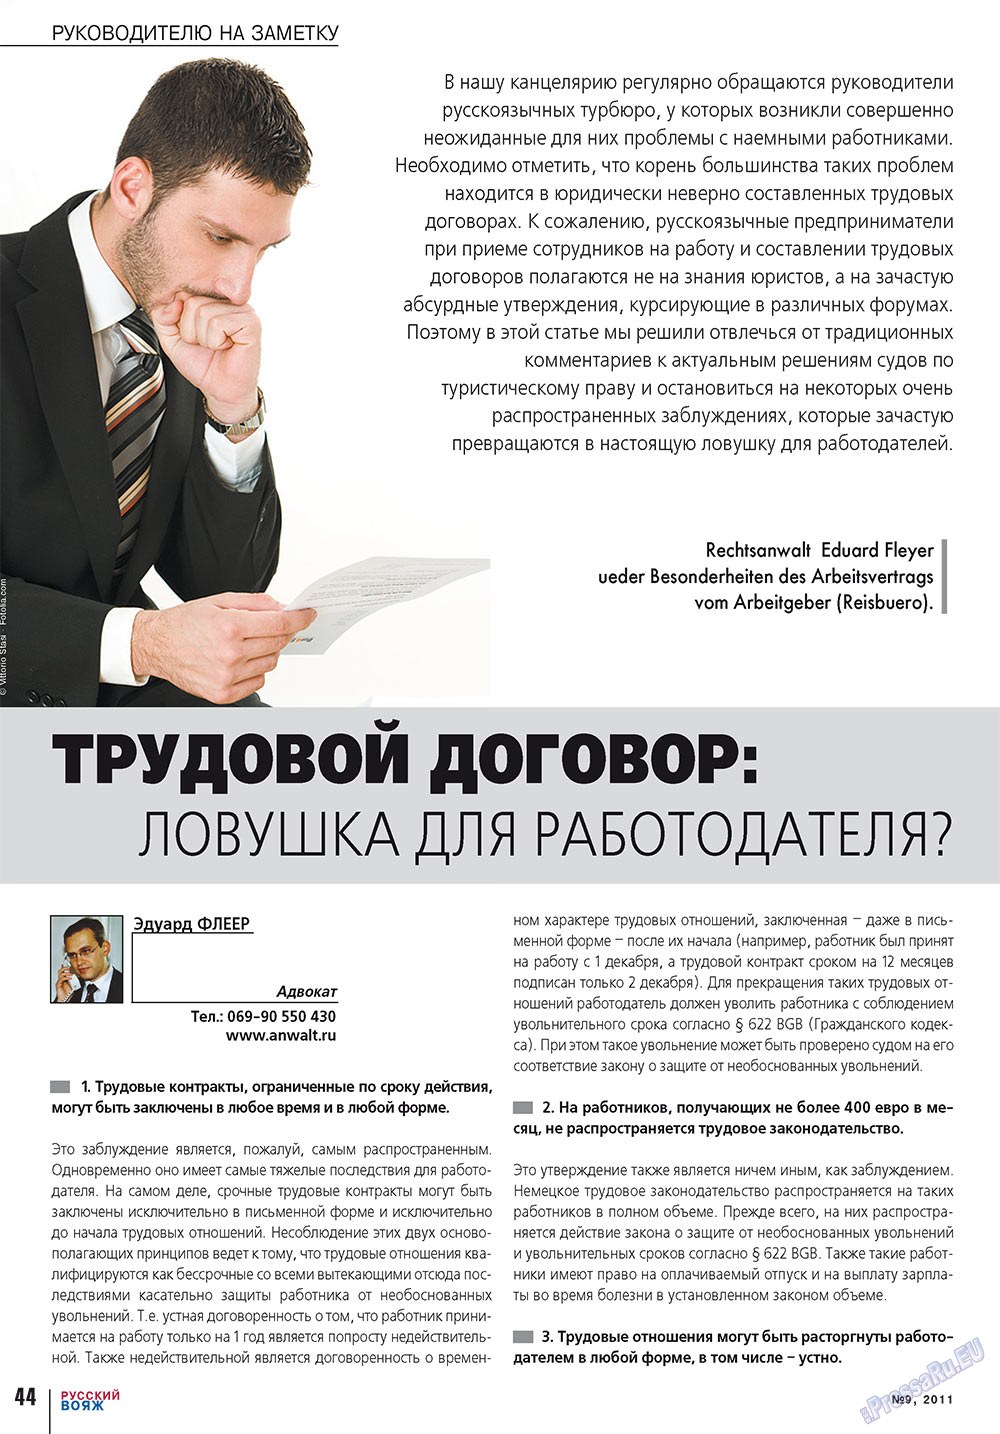 Русский вояж (журнал). 2011 год, номер 9, стр. 44